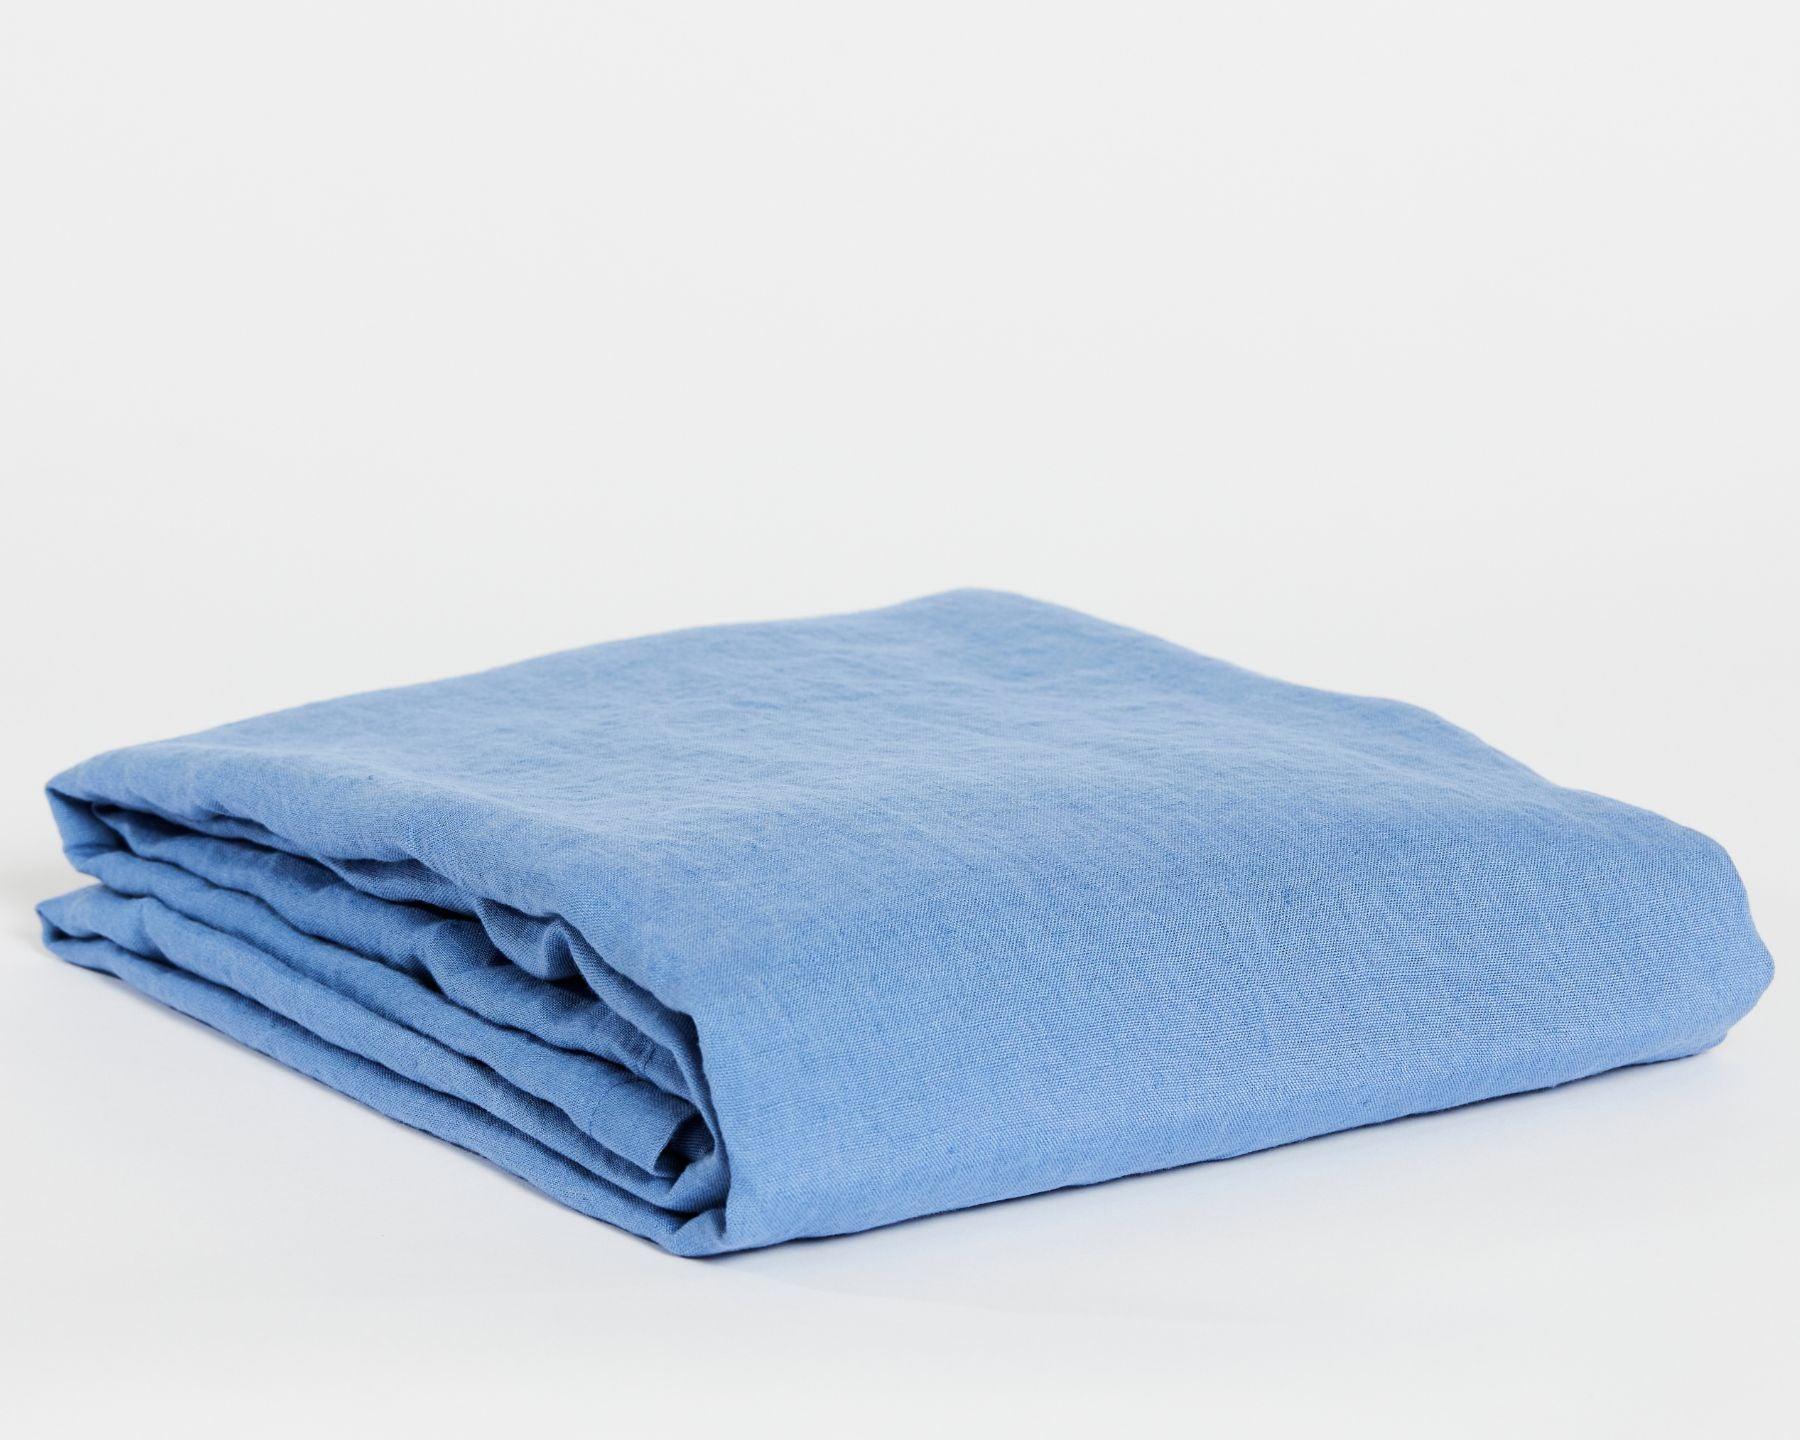 Organic linen top sheet from premium European flax. Light blue color.